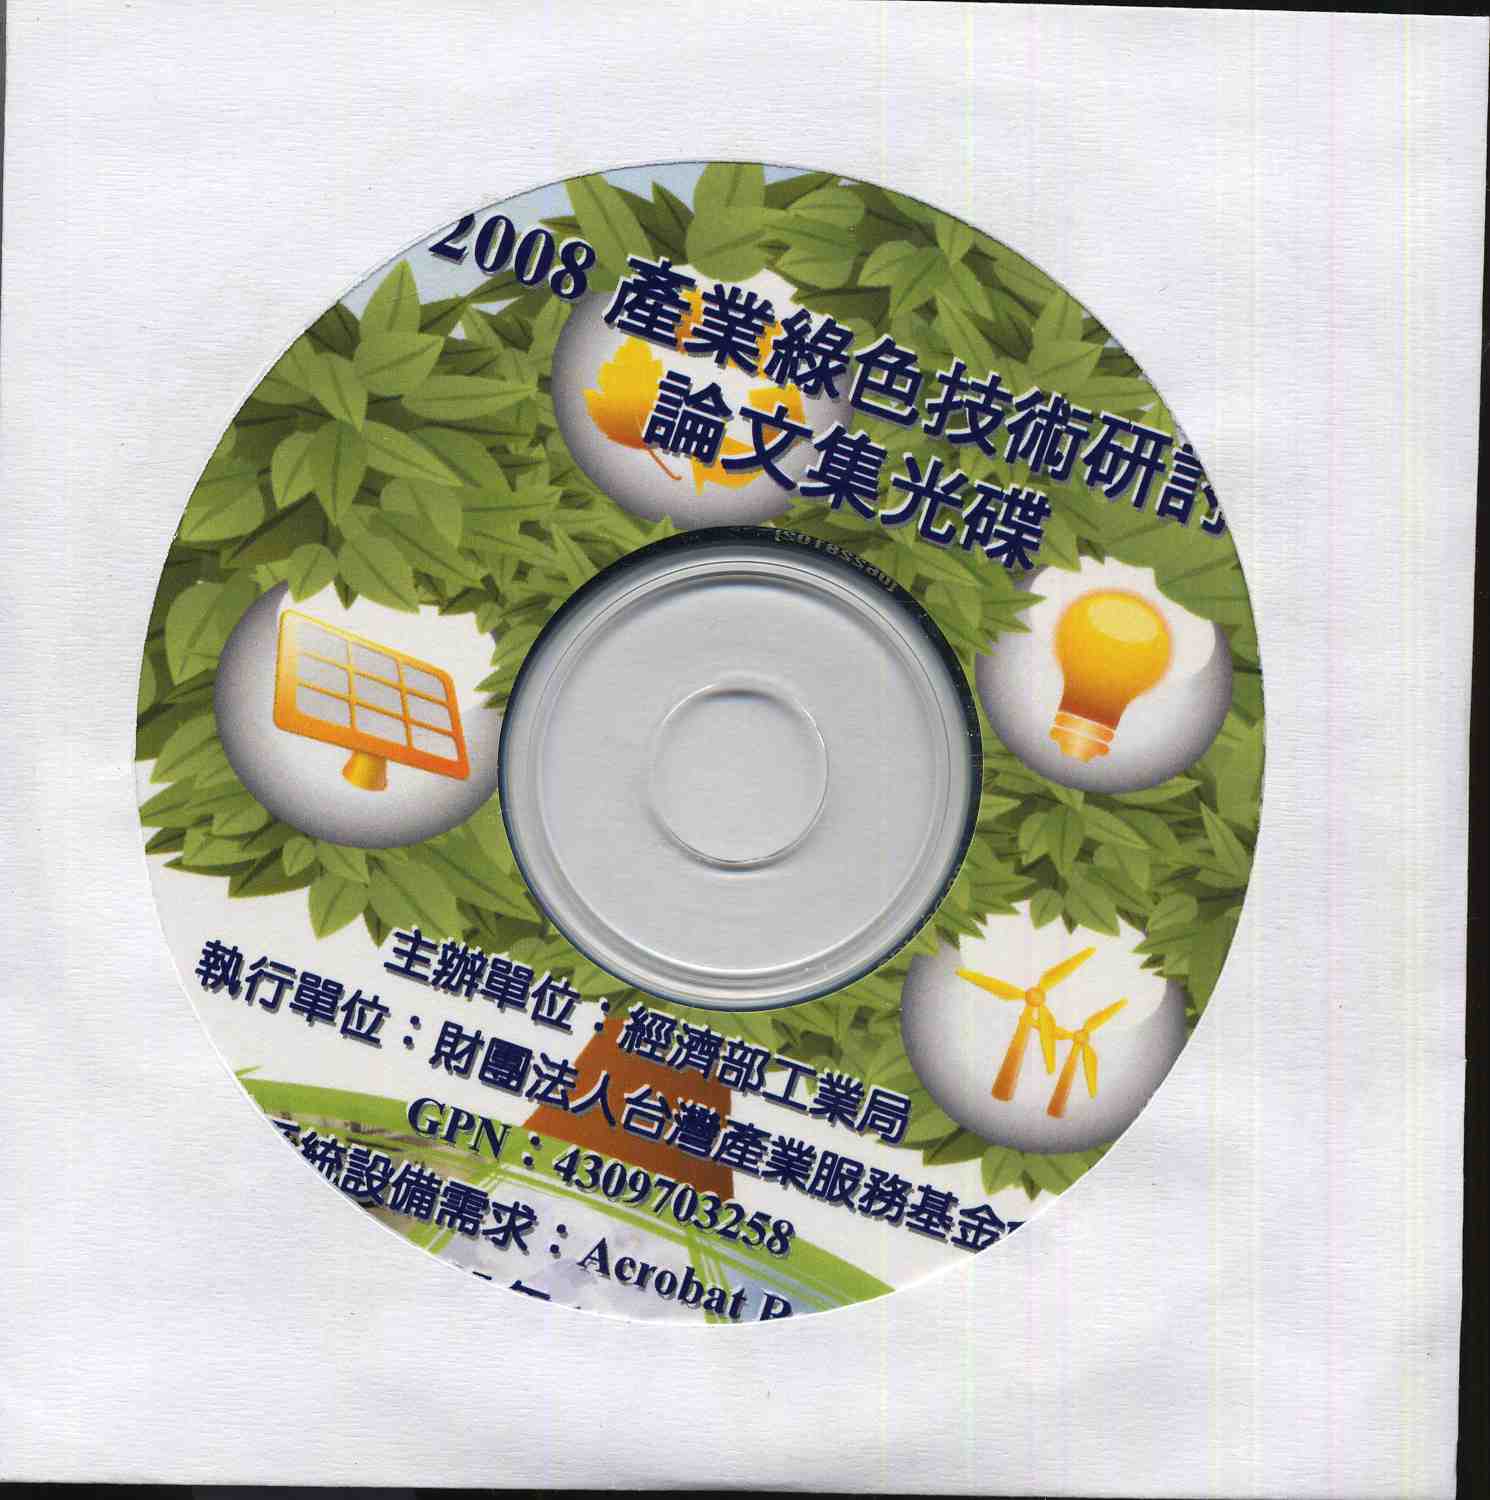 2008產業綠色技術研討會論文集光碟版